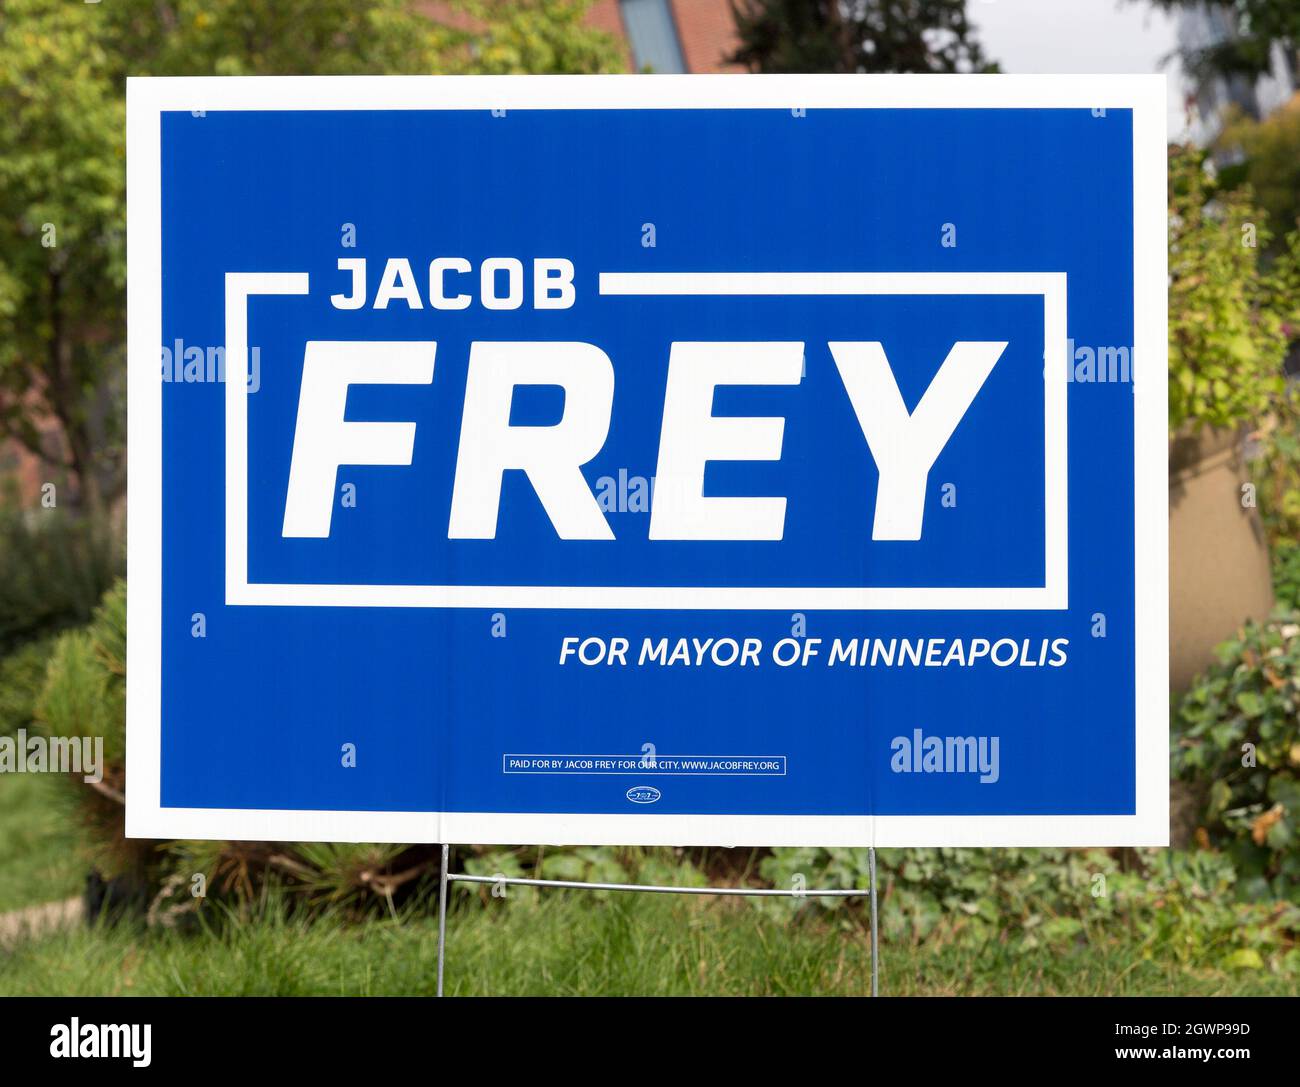 Symbole de cour politique pour la réélection du démocrate sortant Jacob Frey pour le maire de Minneapolis, Minnesota Banque D'Images